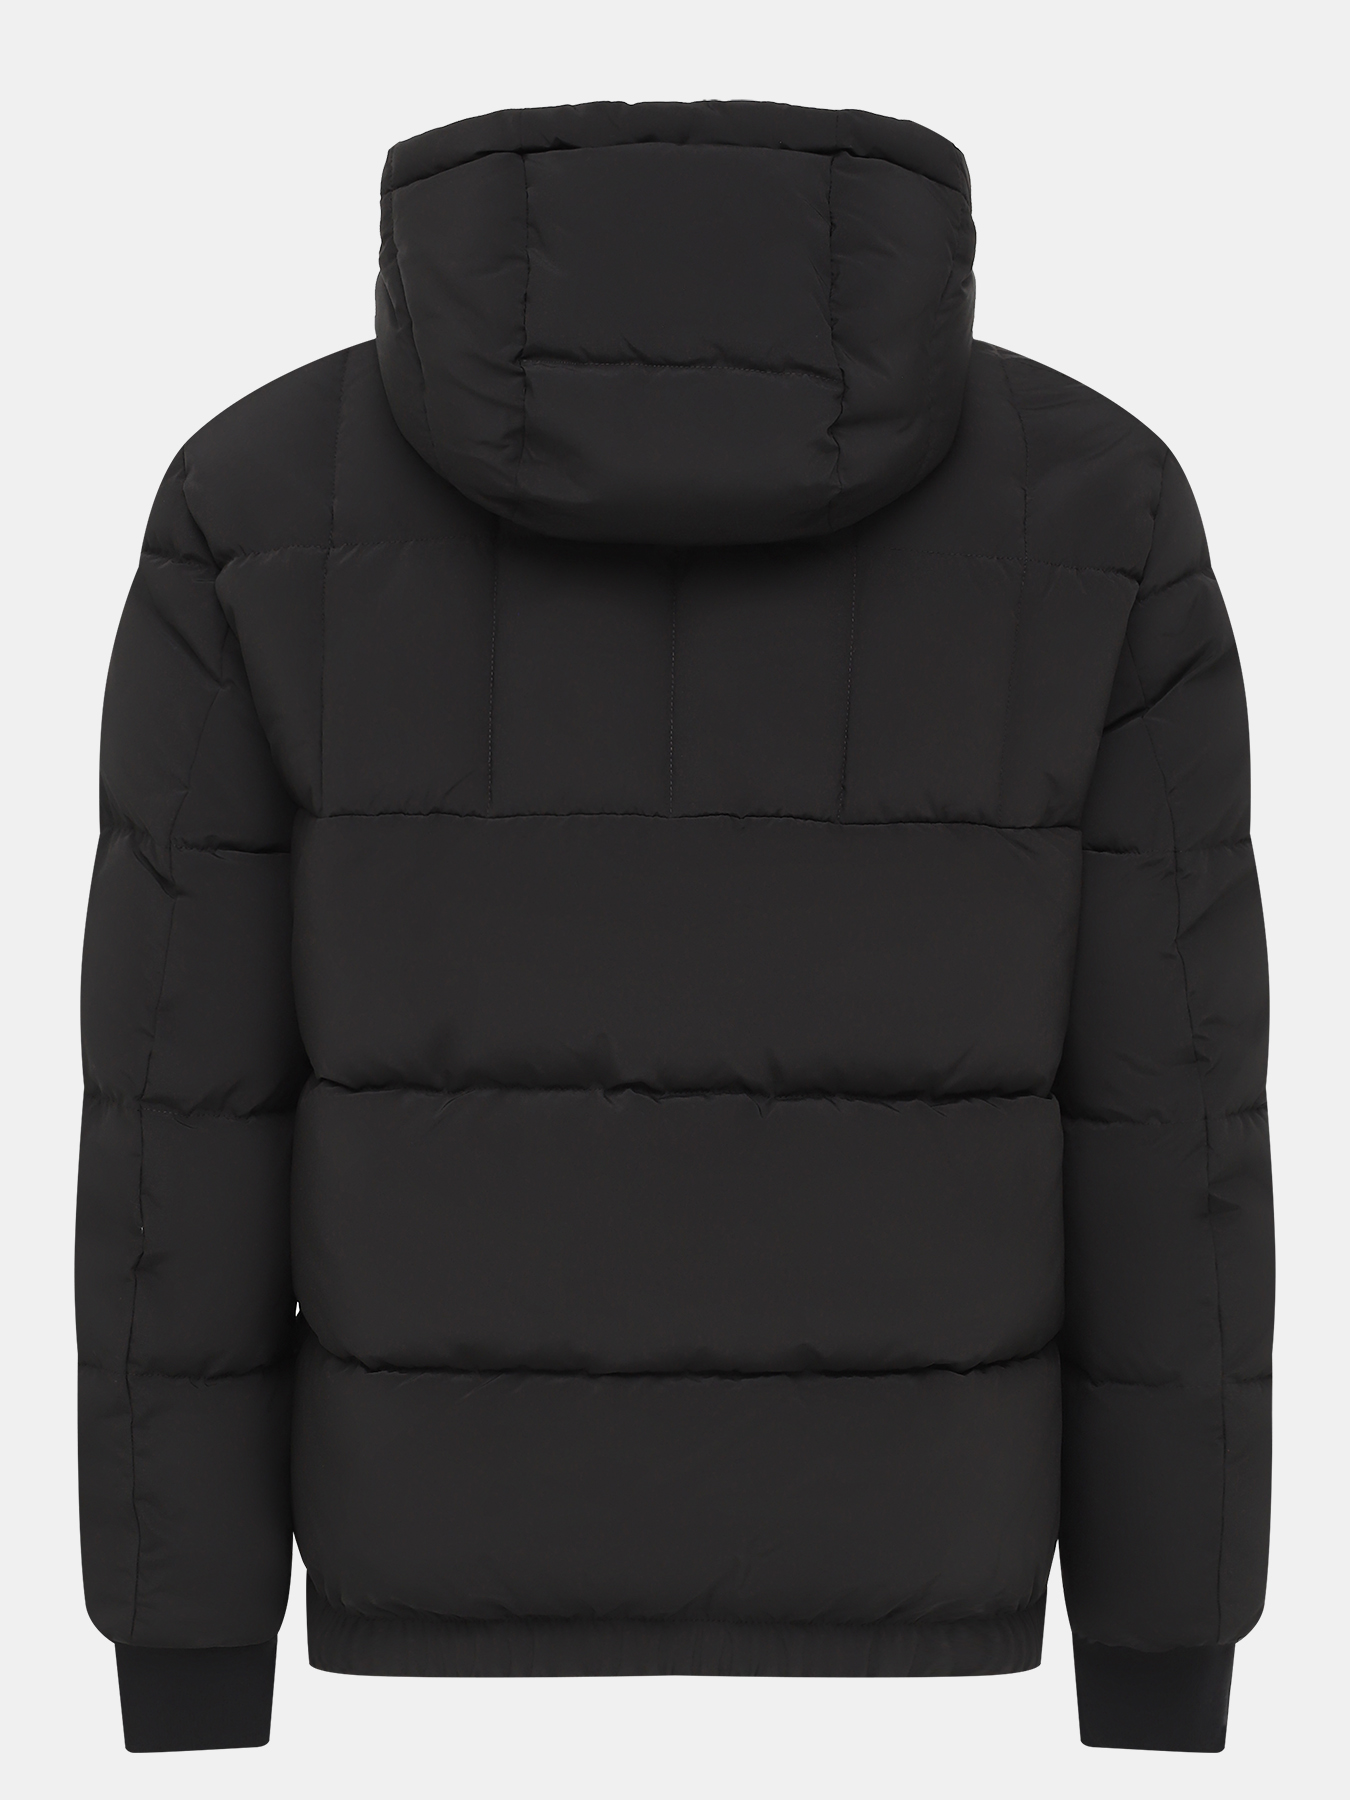 Куртка Balin HUGO 434495-046, цвет черный, размер 54-56 - фото 3